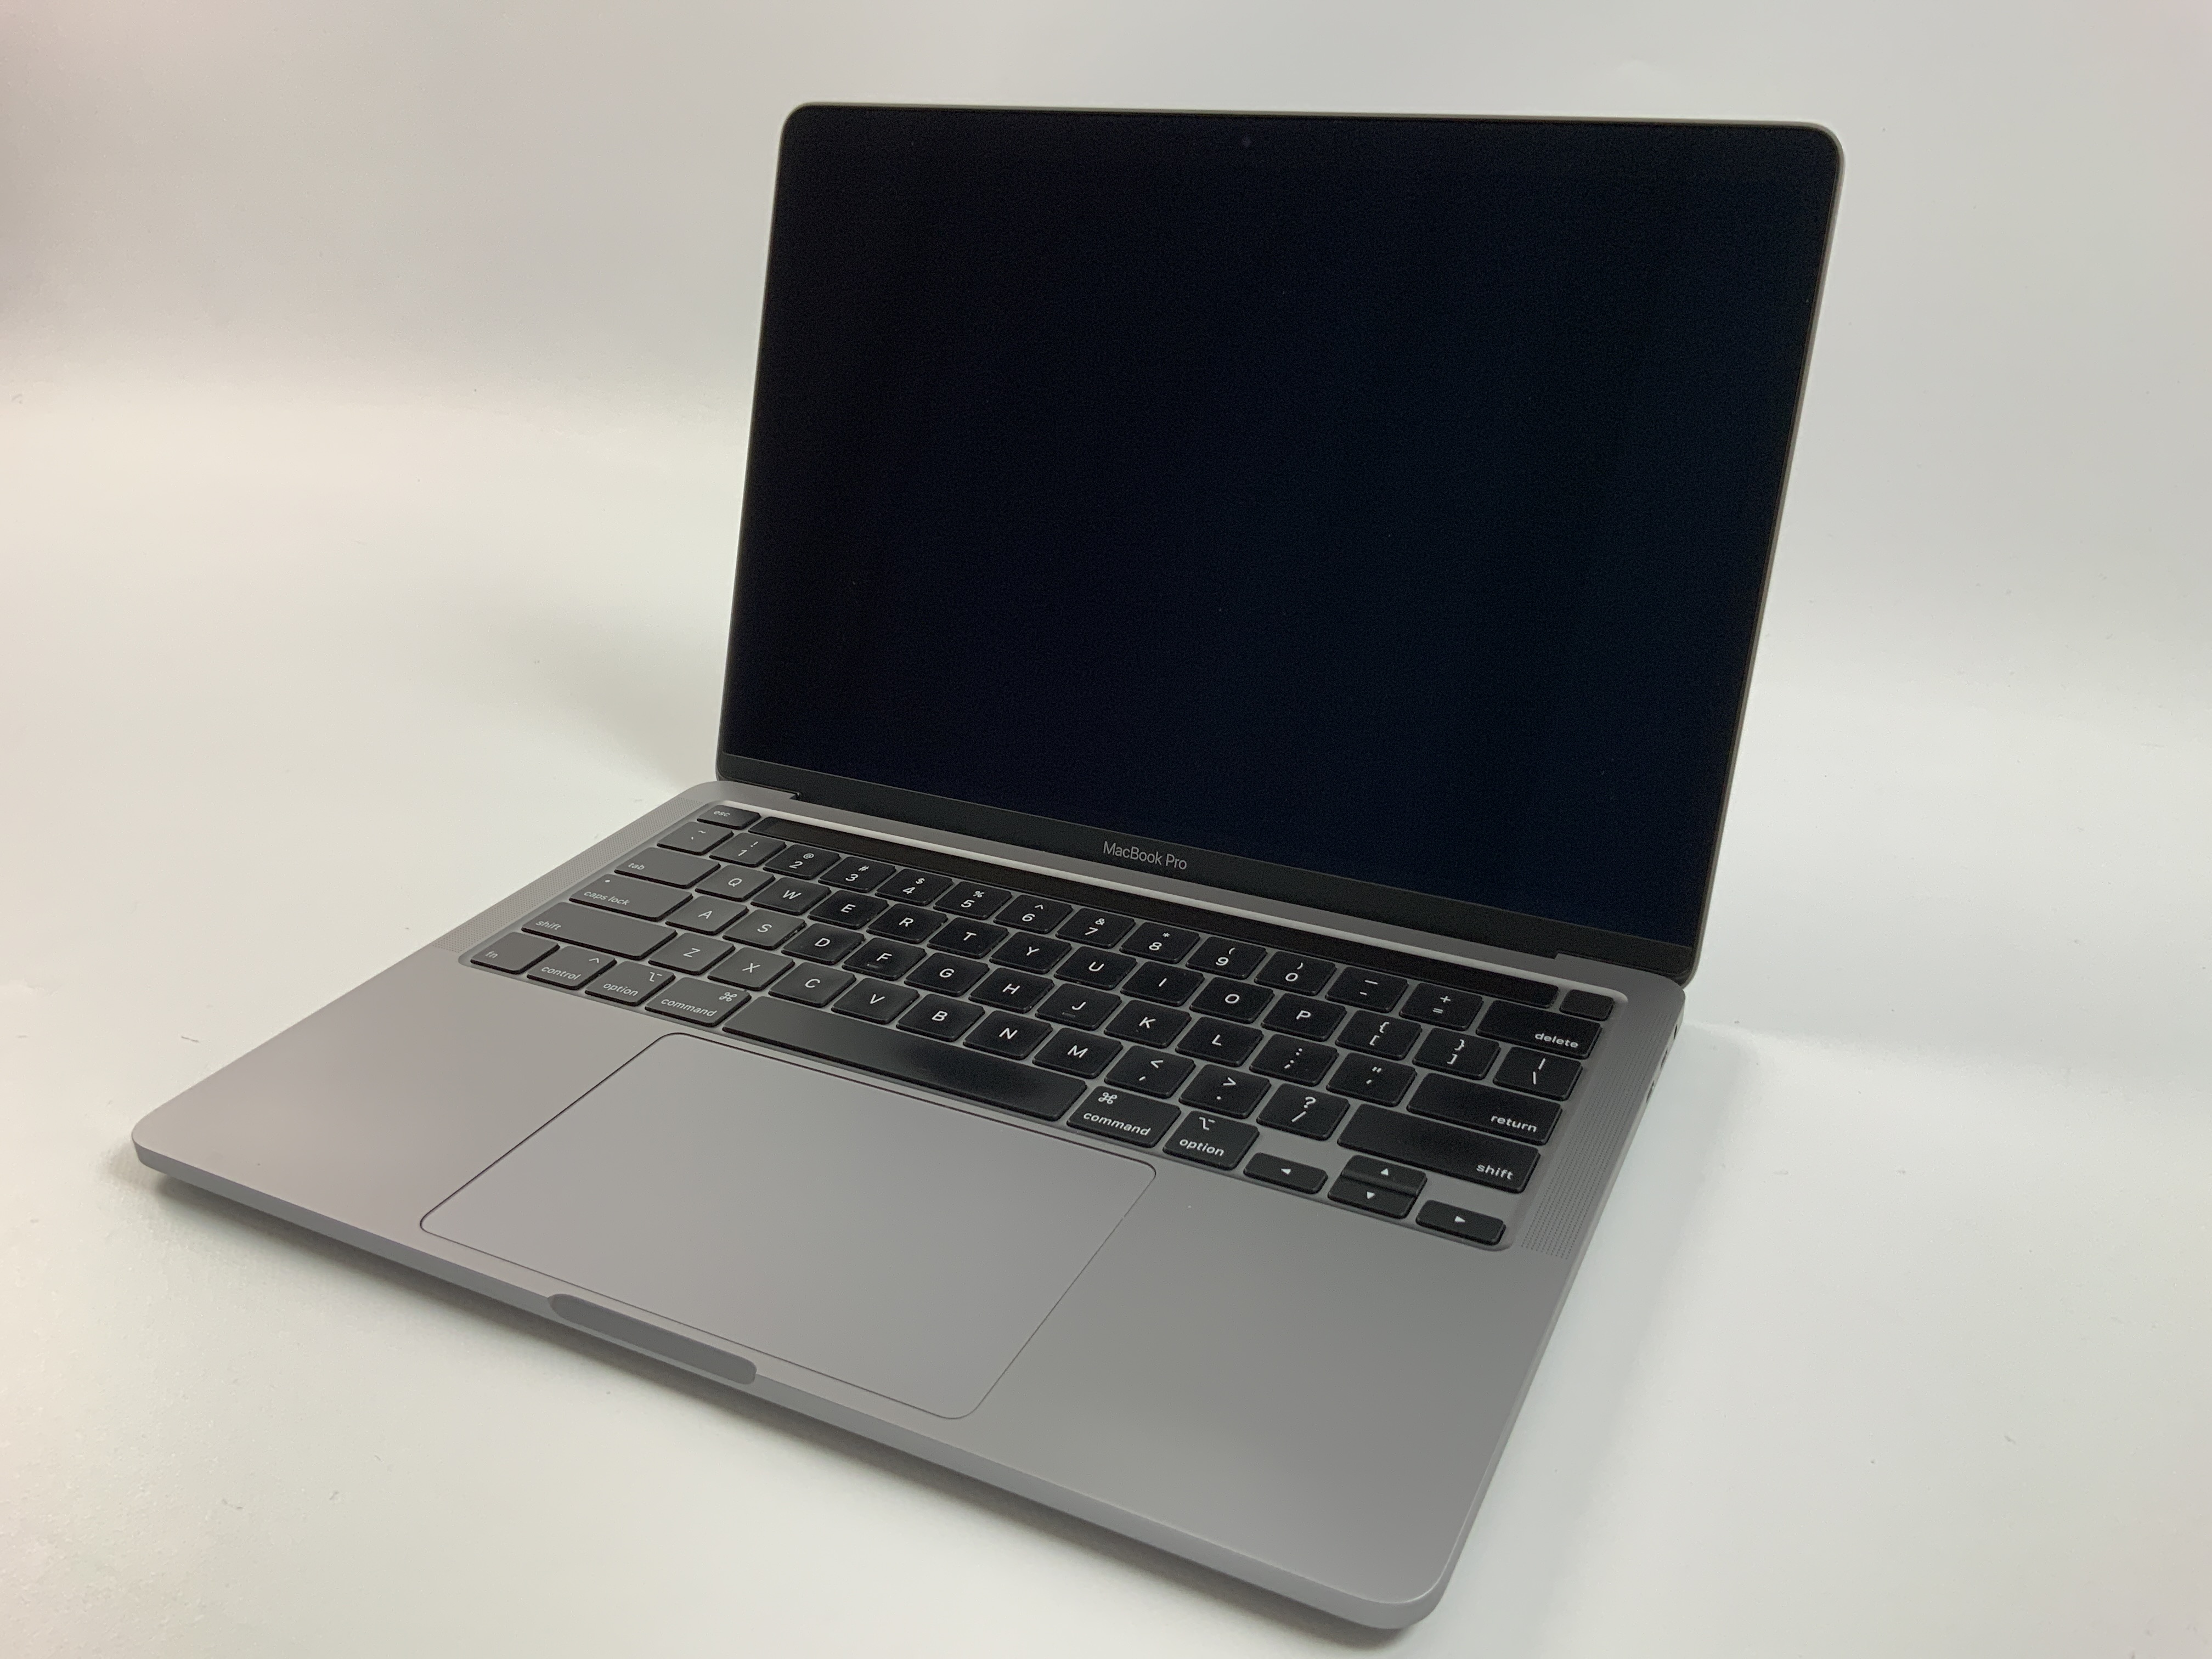 MacBook Pro 13" 4TBT Mid 2020 (Intel Quad-Core i5 2.0 GHz 16 GB RAM 512 GB SSD), Space Gray, Intel Quad-Core i5 2.0 GHz, 16 GB RAM, 512 GB SSD, obraz 1